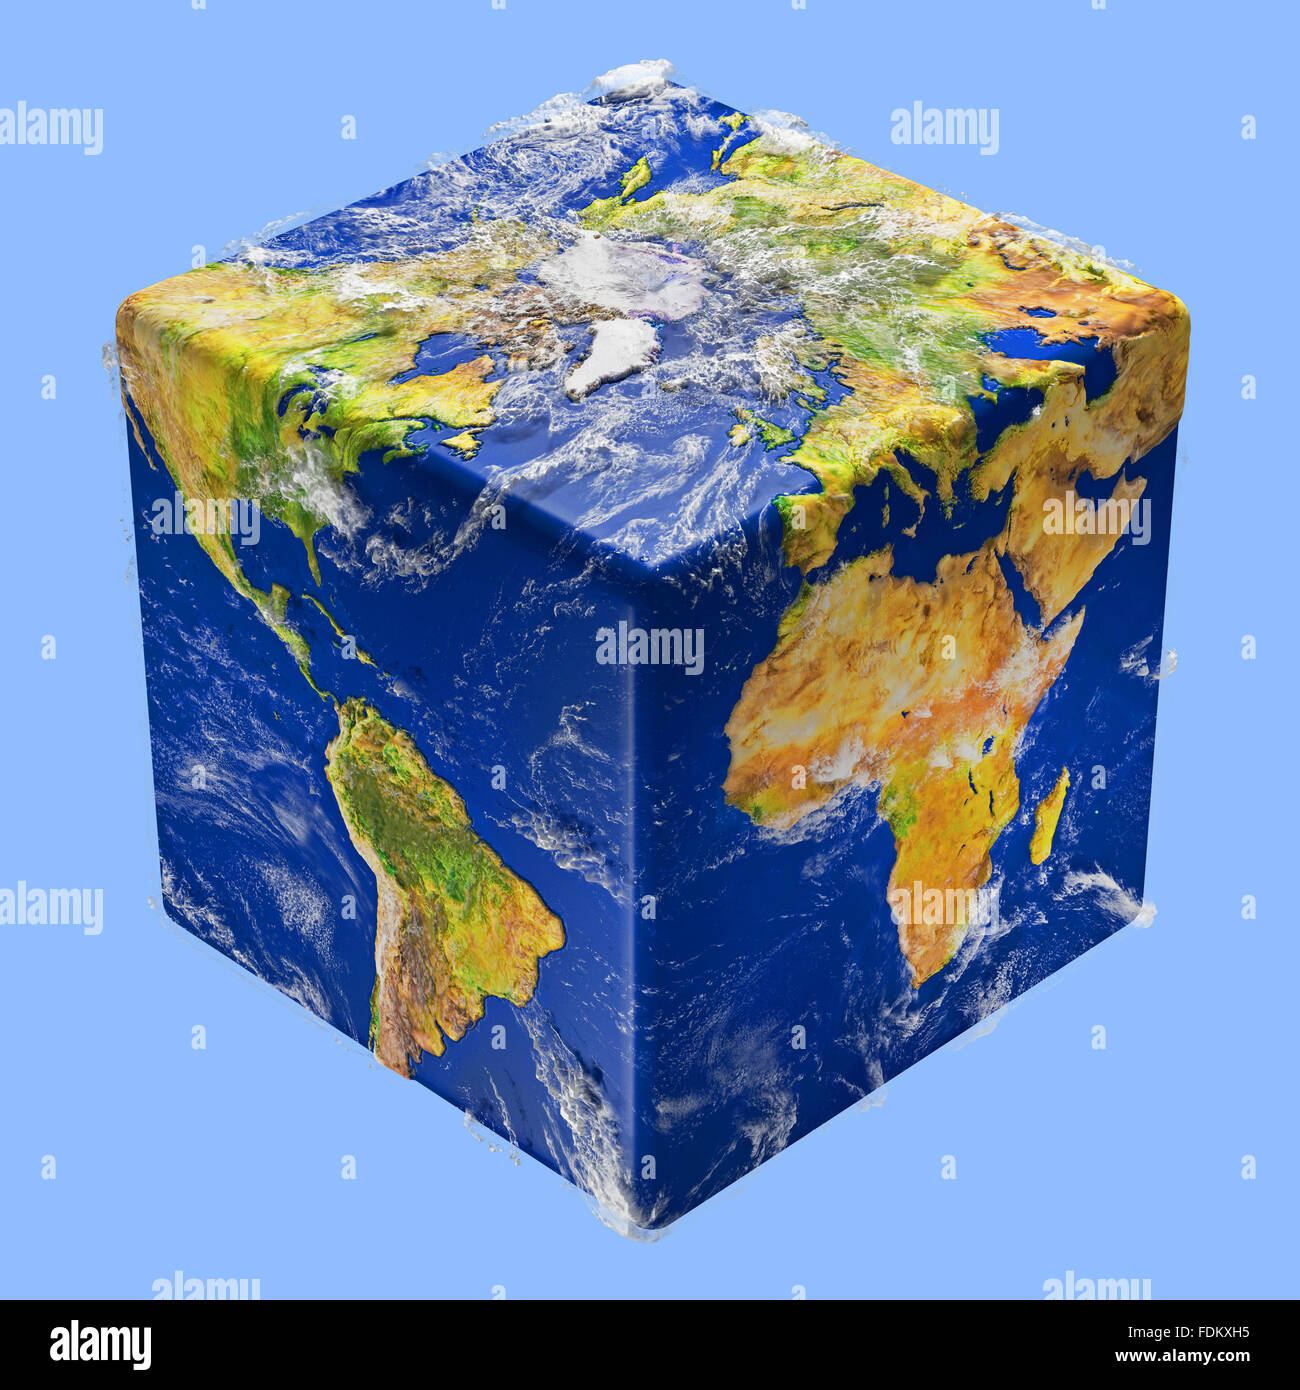 Erde-Würfel-box Stockfotografie - Alamy